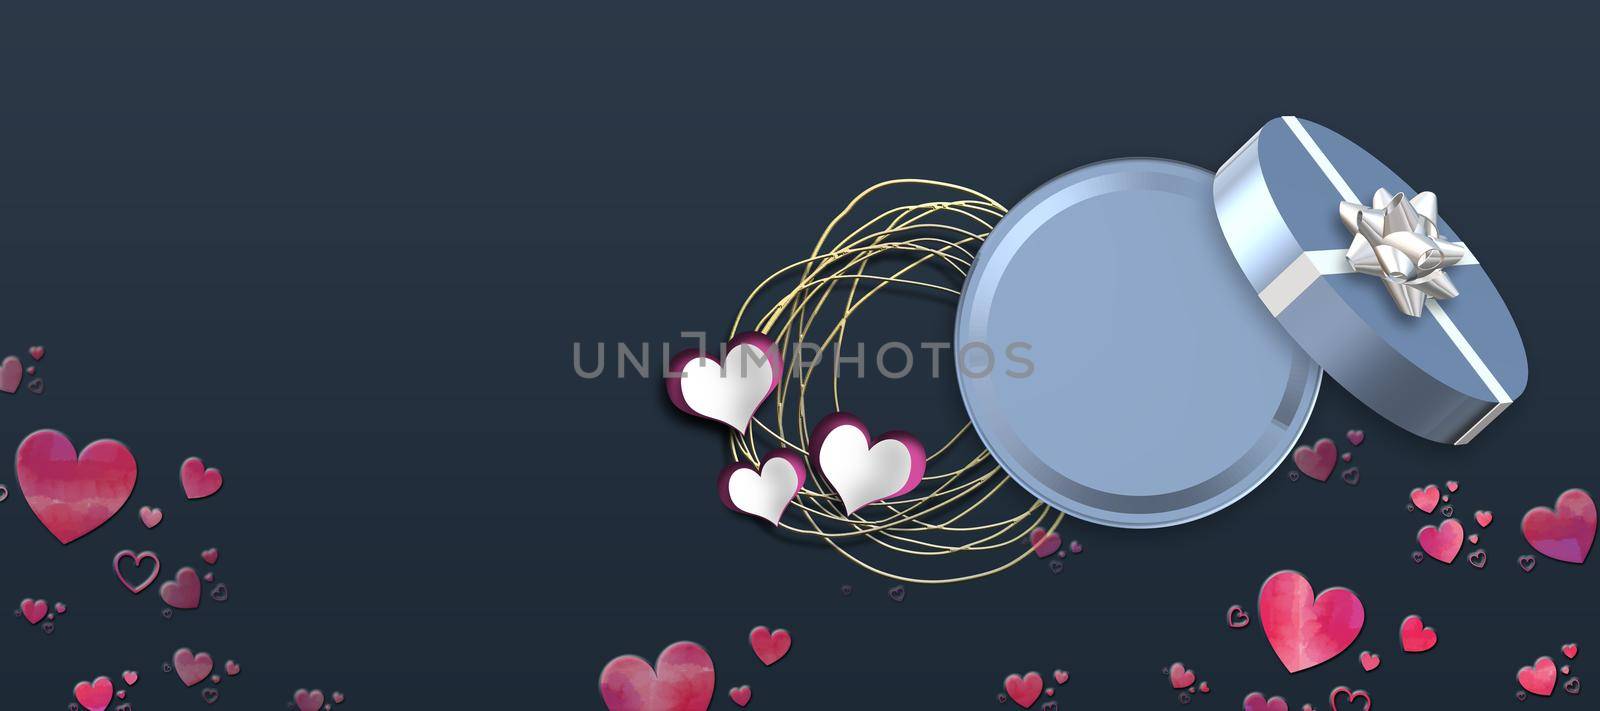 Valentine's Day love design by NelliPolk